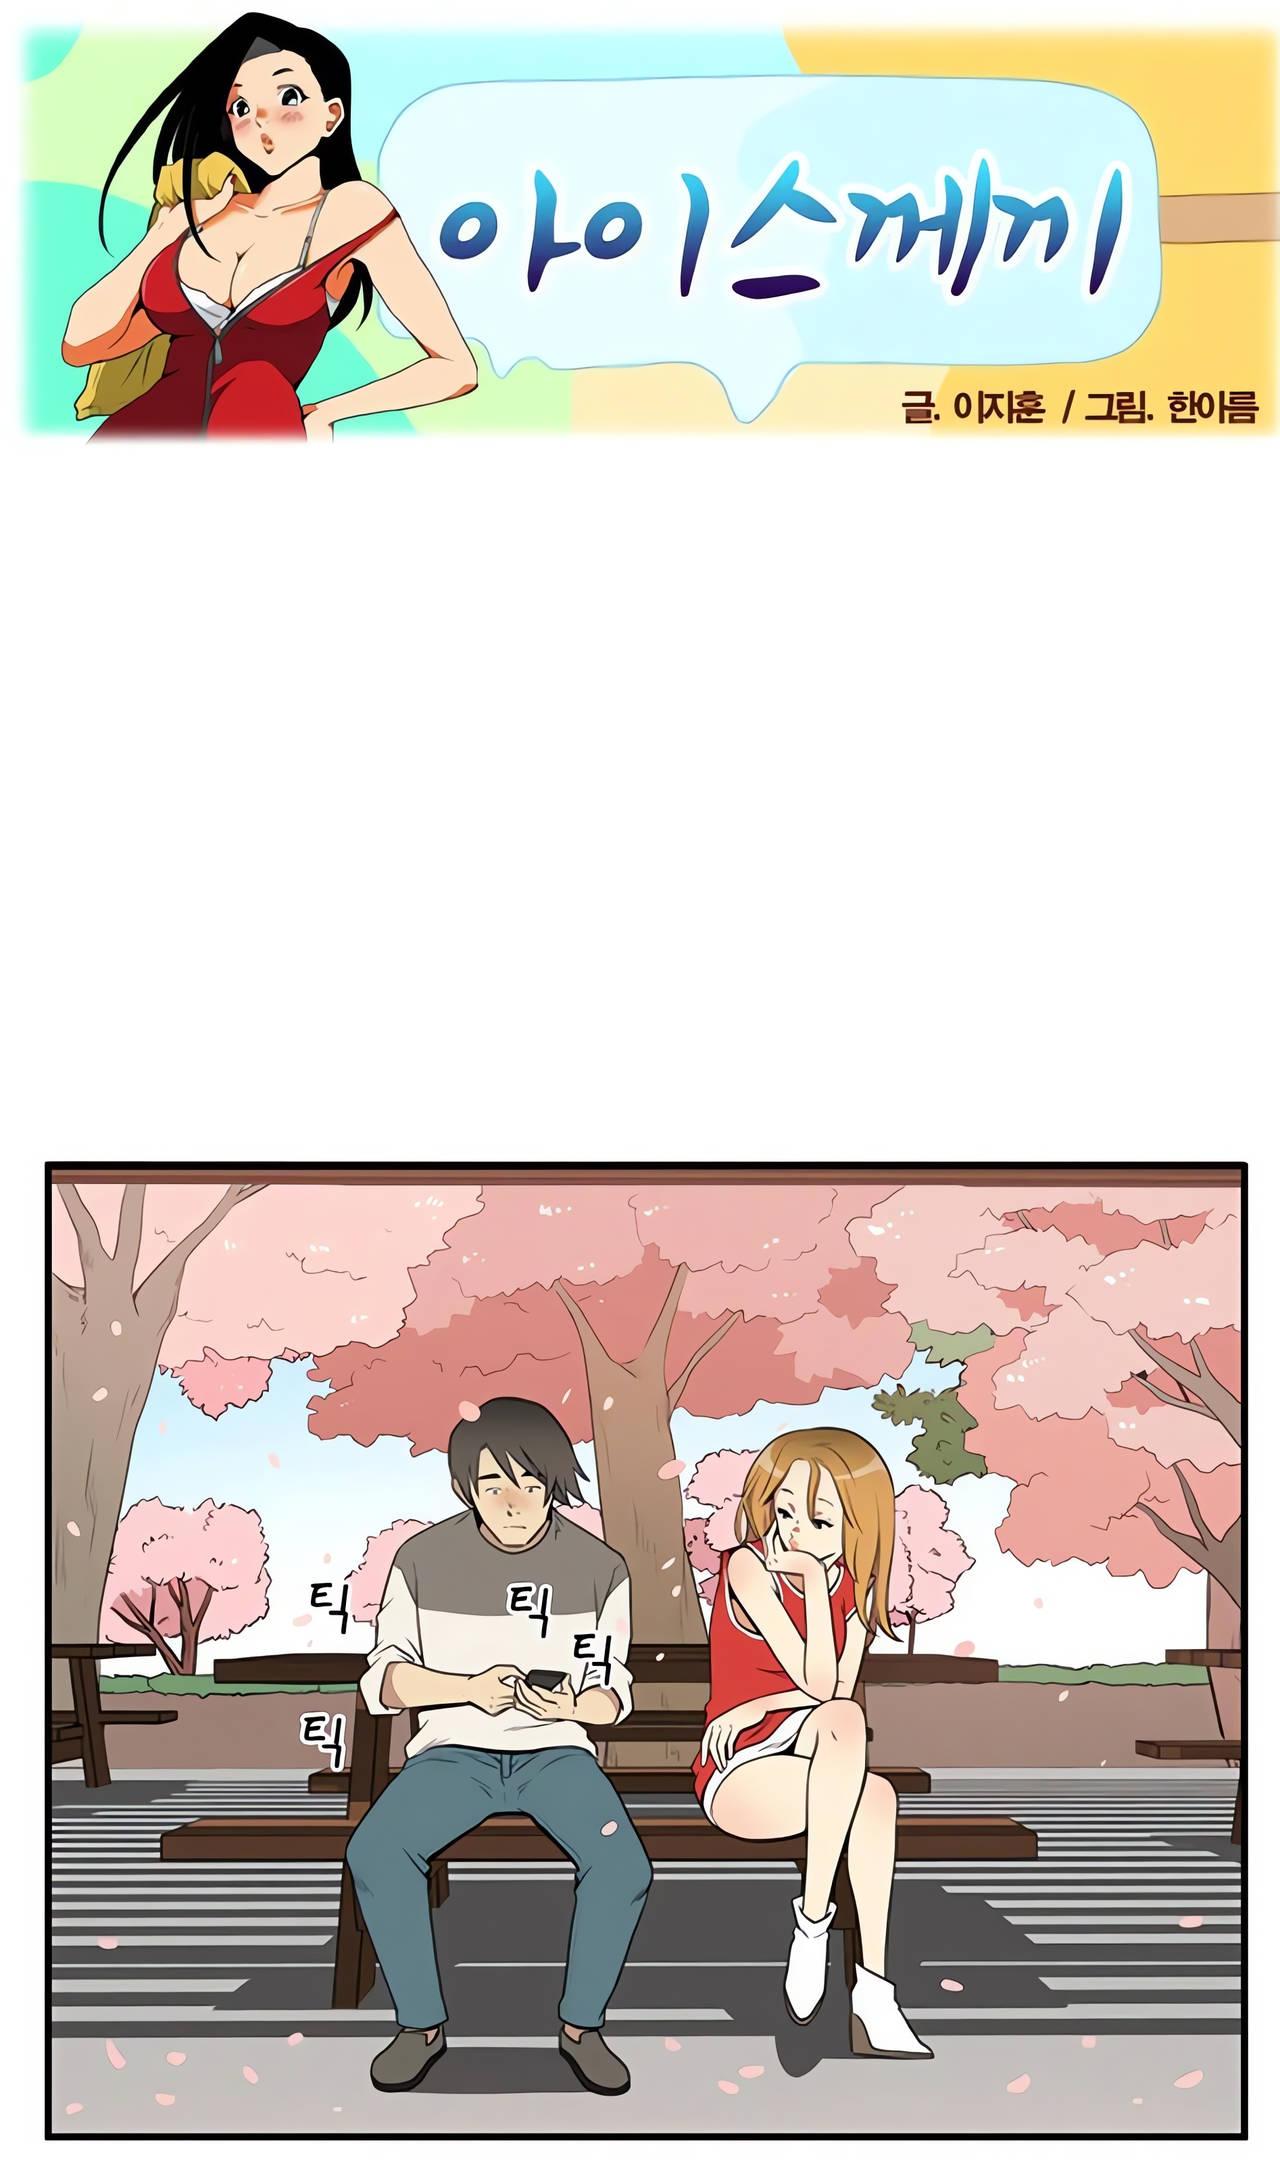 樱花树下，男孩和女孩在长椅上约会